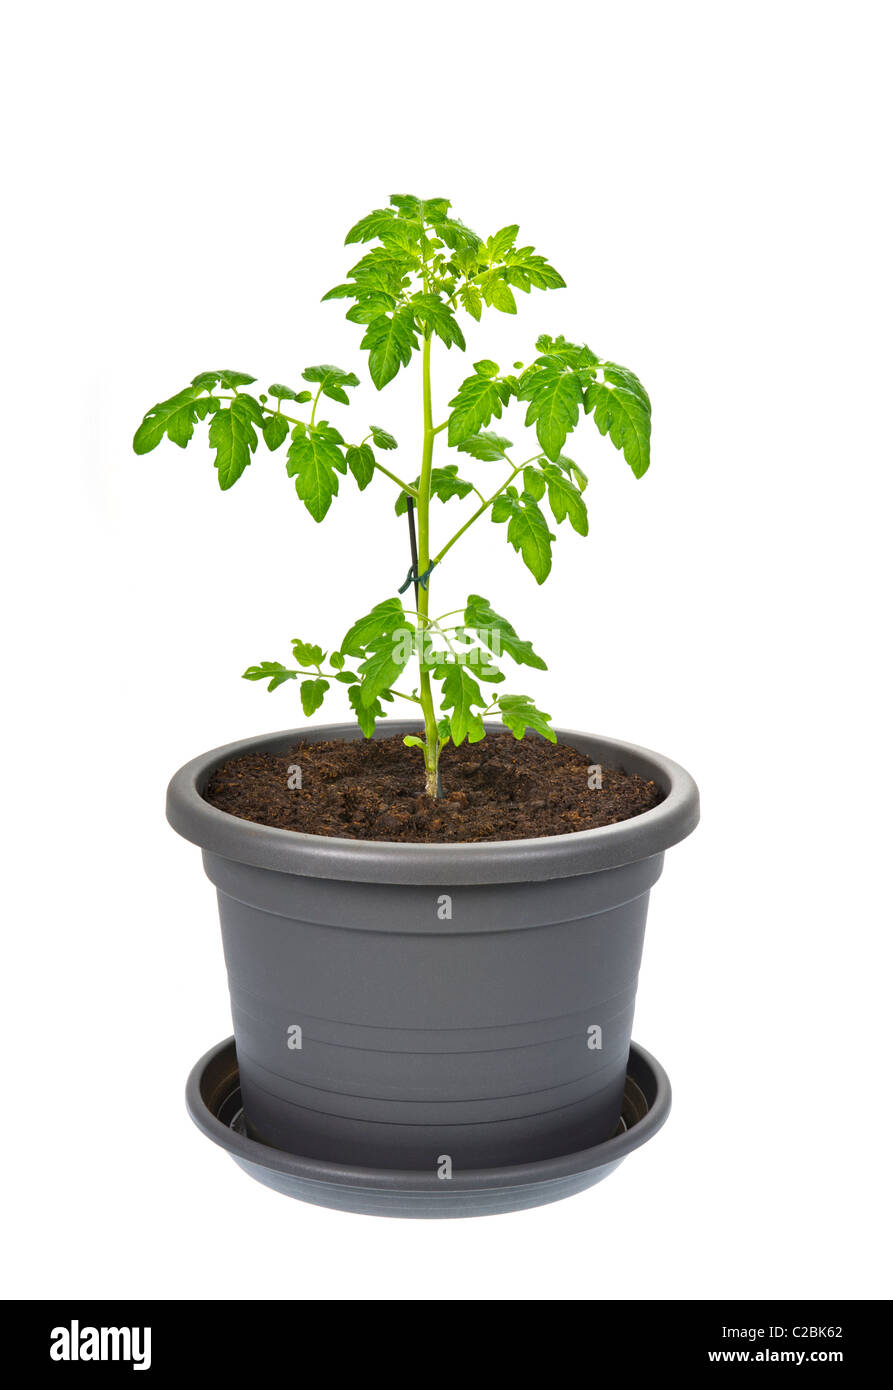 Tomaten Pflanze Blumentopf Topf Kunststoff-Container Erde Blumenerde wachsen wachsen grüne ökologisch ökologischer Eco Tonerde für Blumen Stockfoto